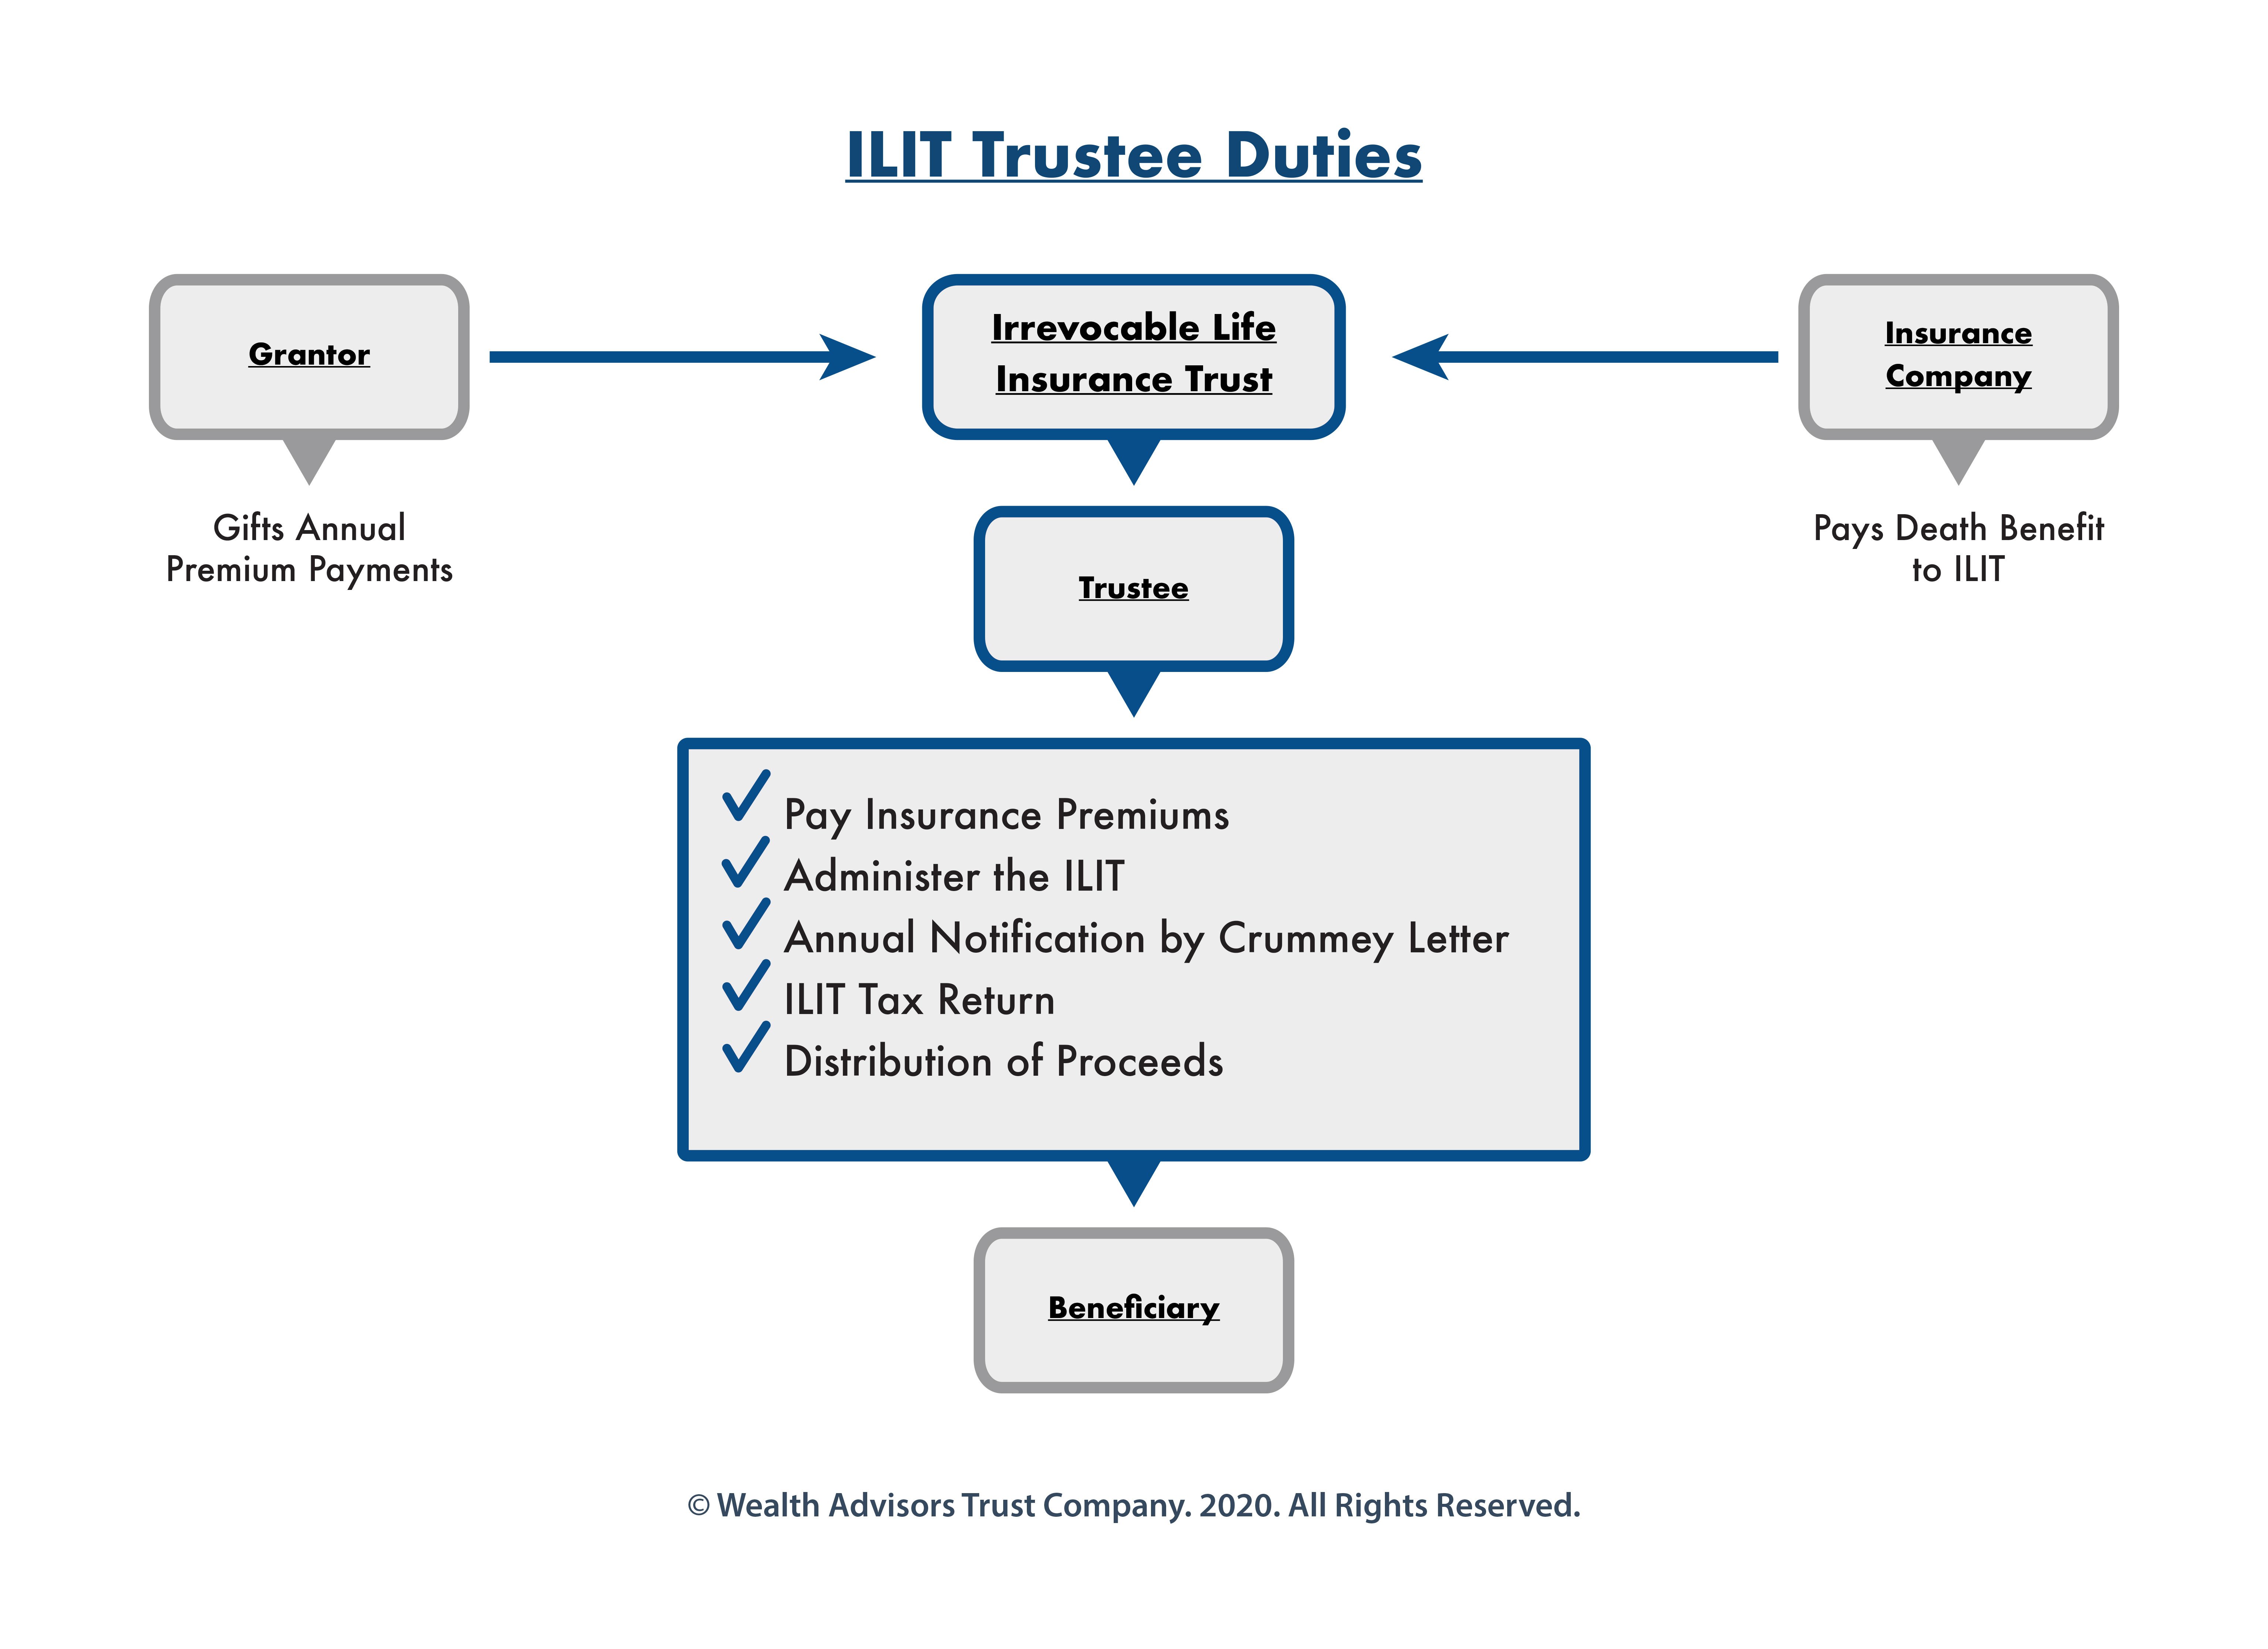 ilit-trustee-duties-flowchart-wealth-advisors